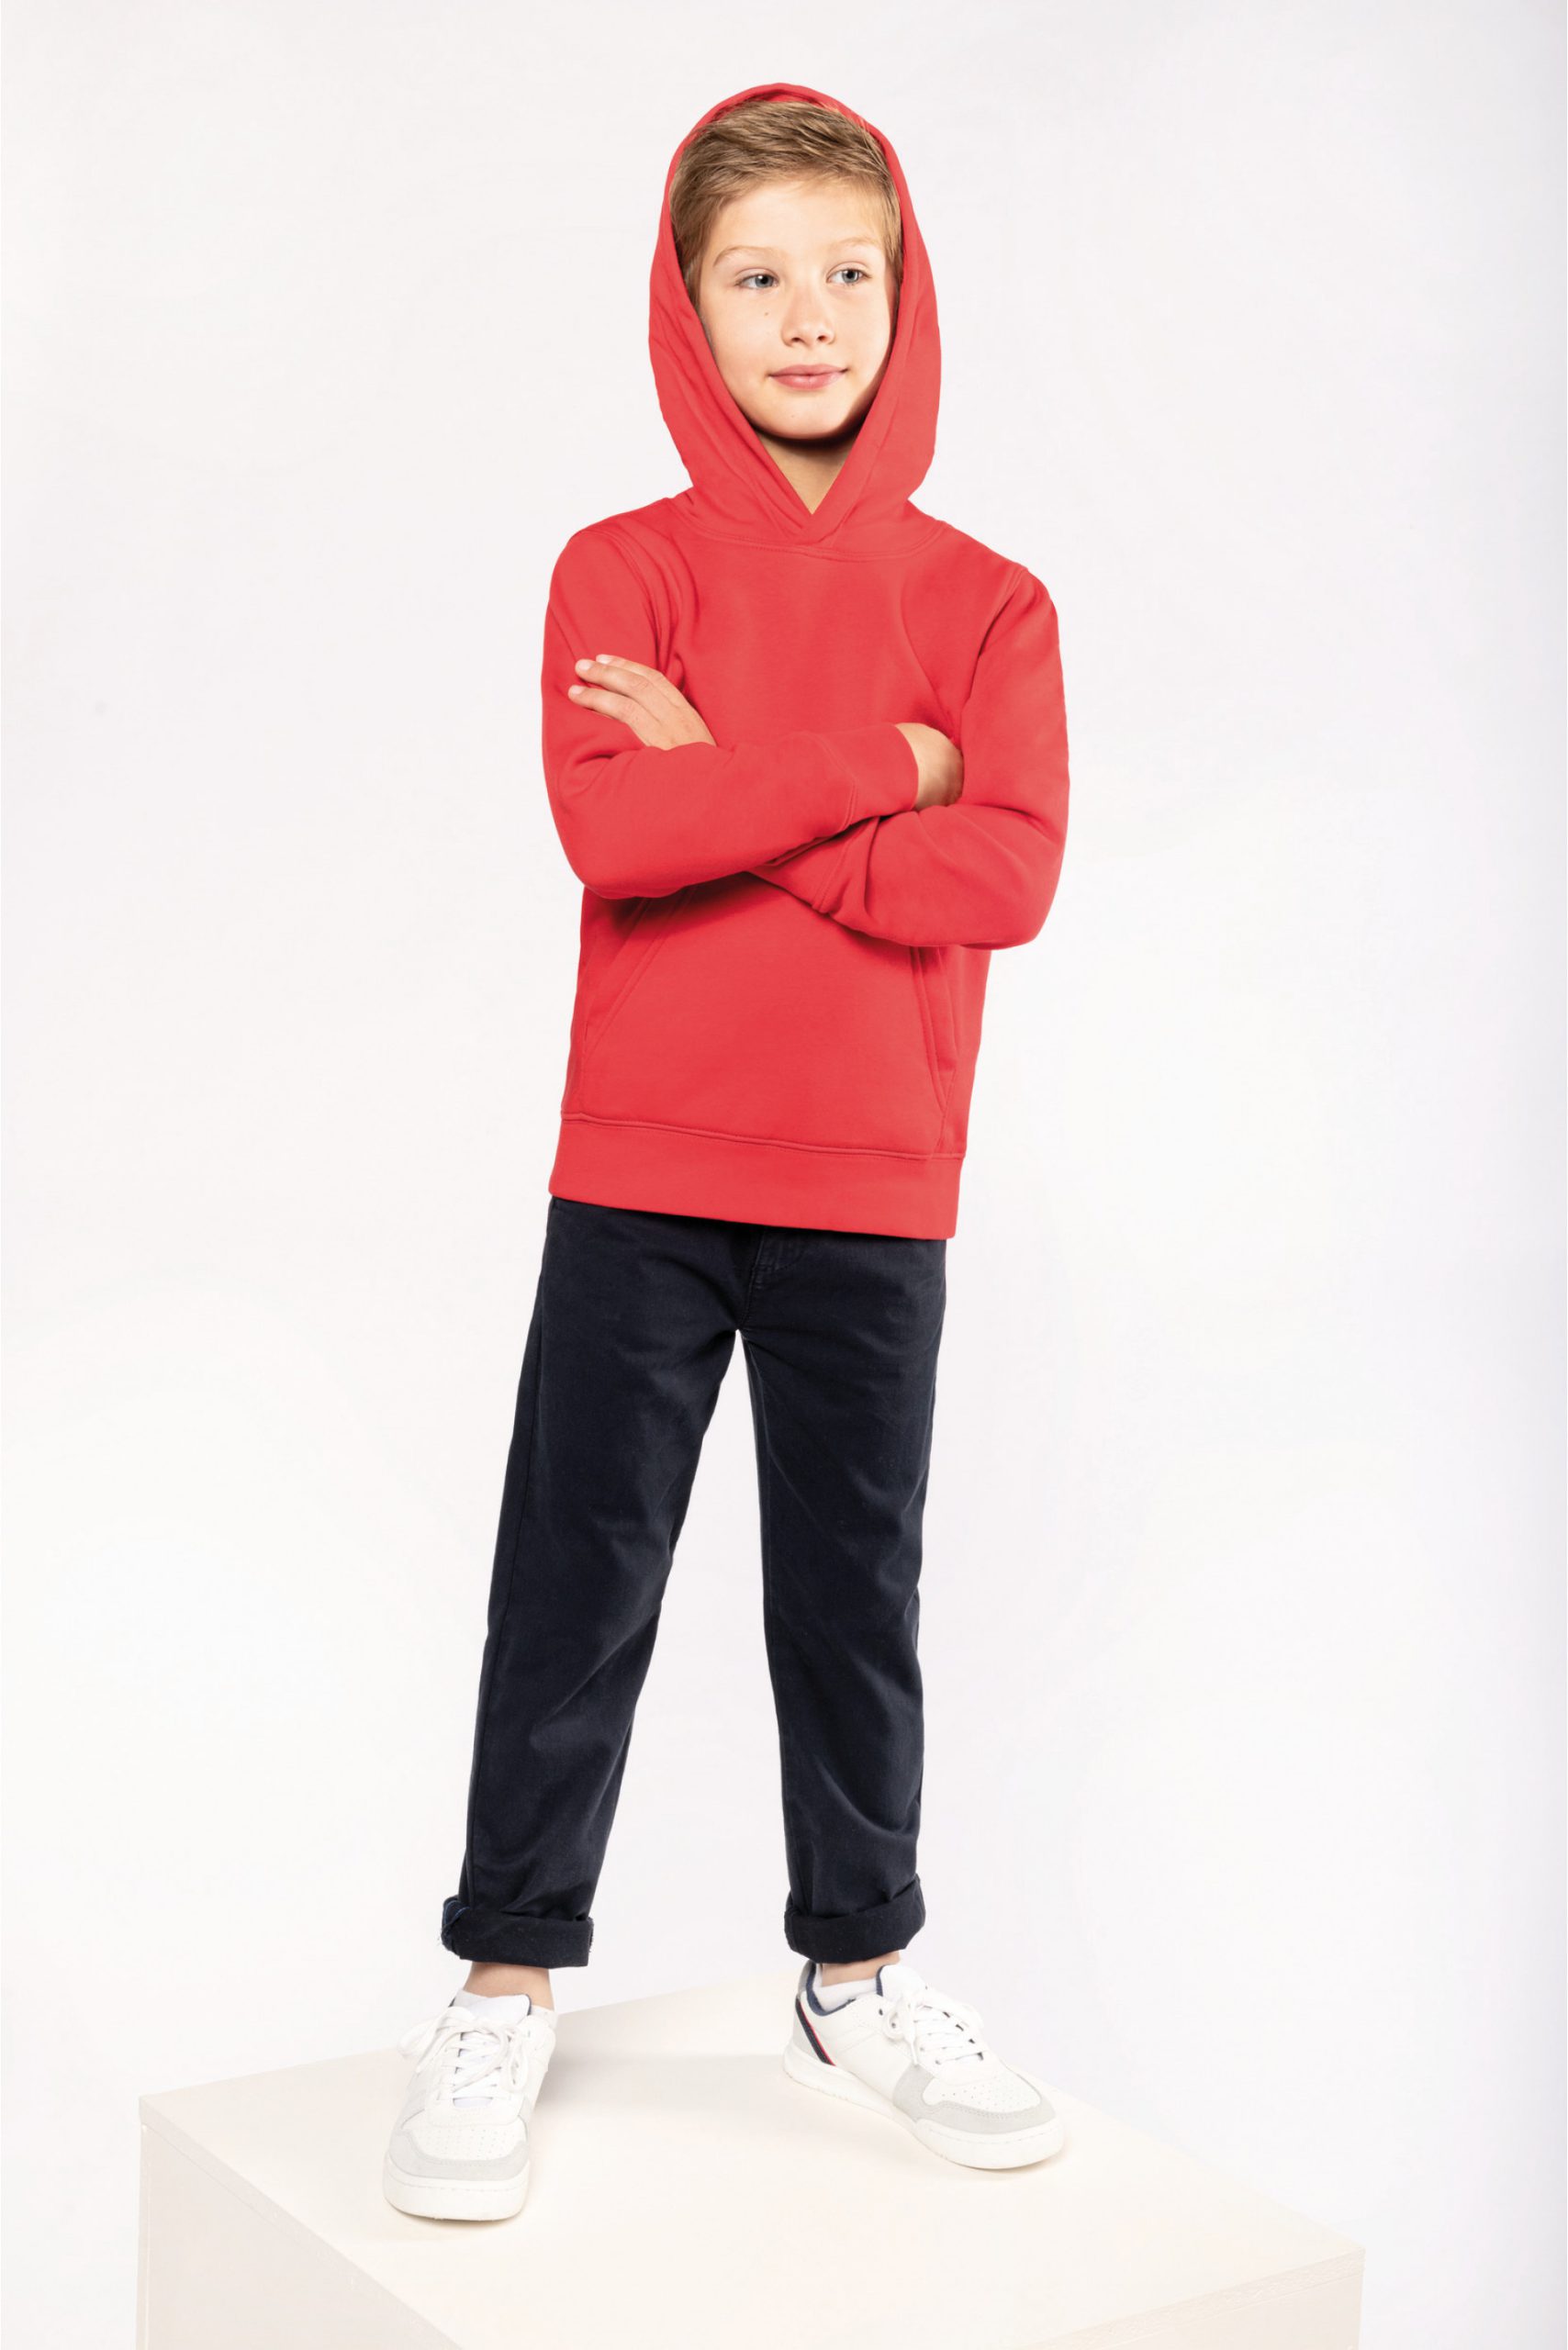 Aanvrager Republiek Spoedig K4029 - Ecologische kindersweater met capuchon - Hoodie bedrukken